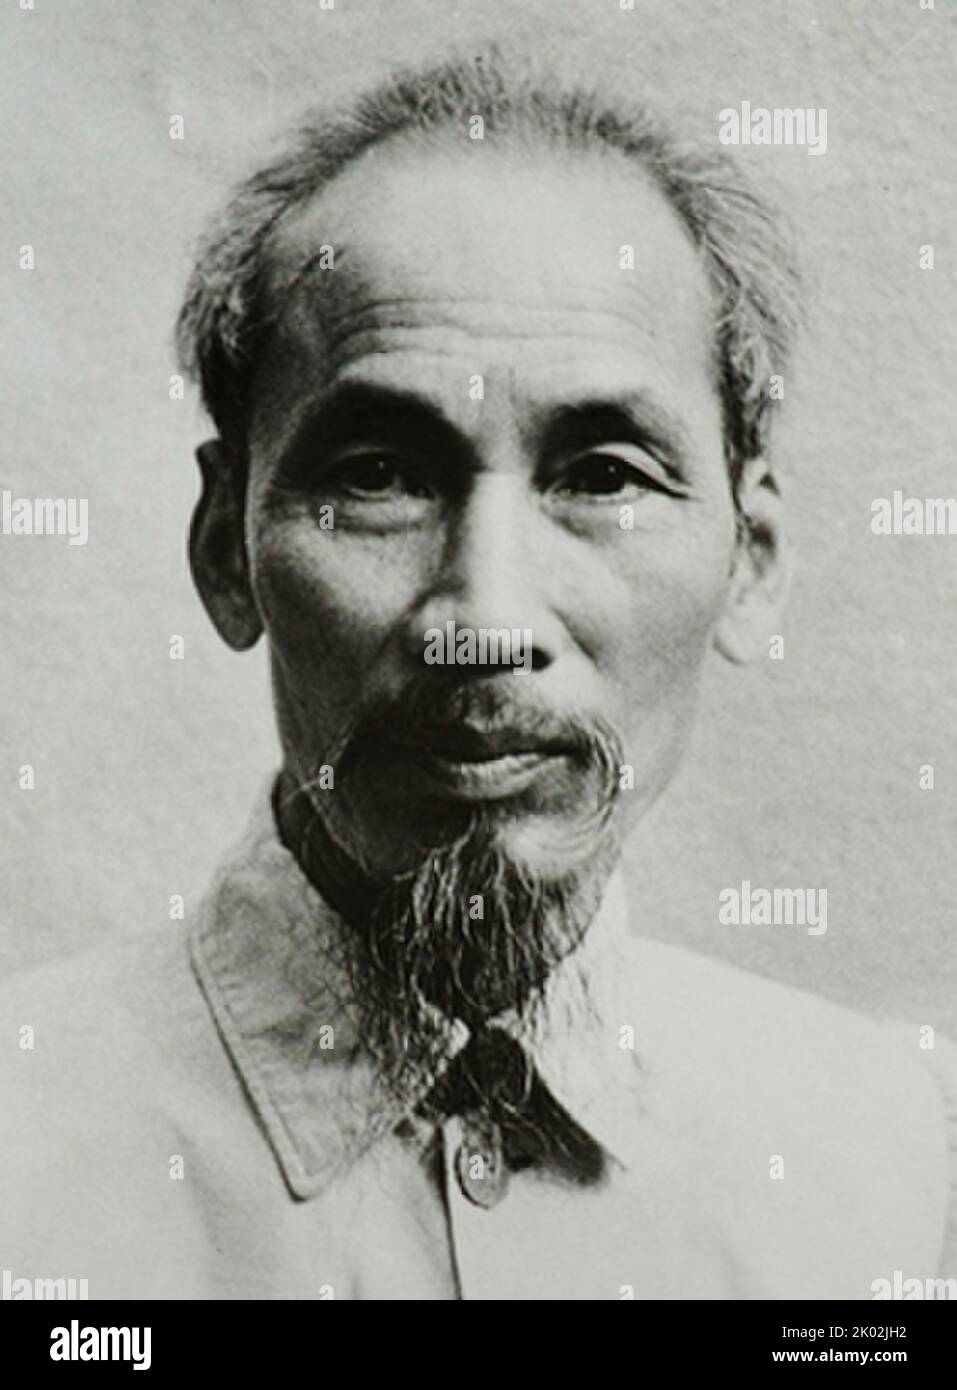 Ho Chi Minh (1890 - 1969), révolutionnaire et politicien vietnamien. Il a été Premier Ministre du Vietnam de 1945 à 1955 et Président de 1945 à 1969. Banque D'Images